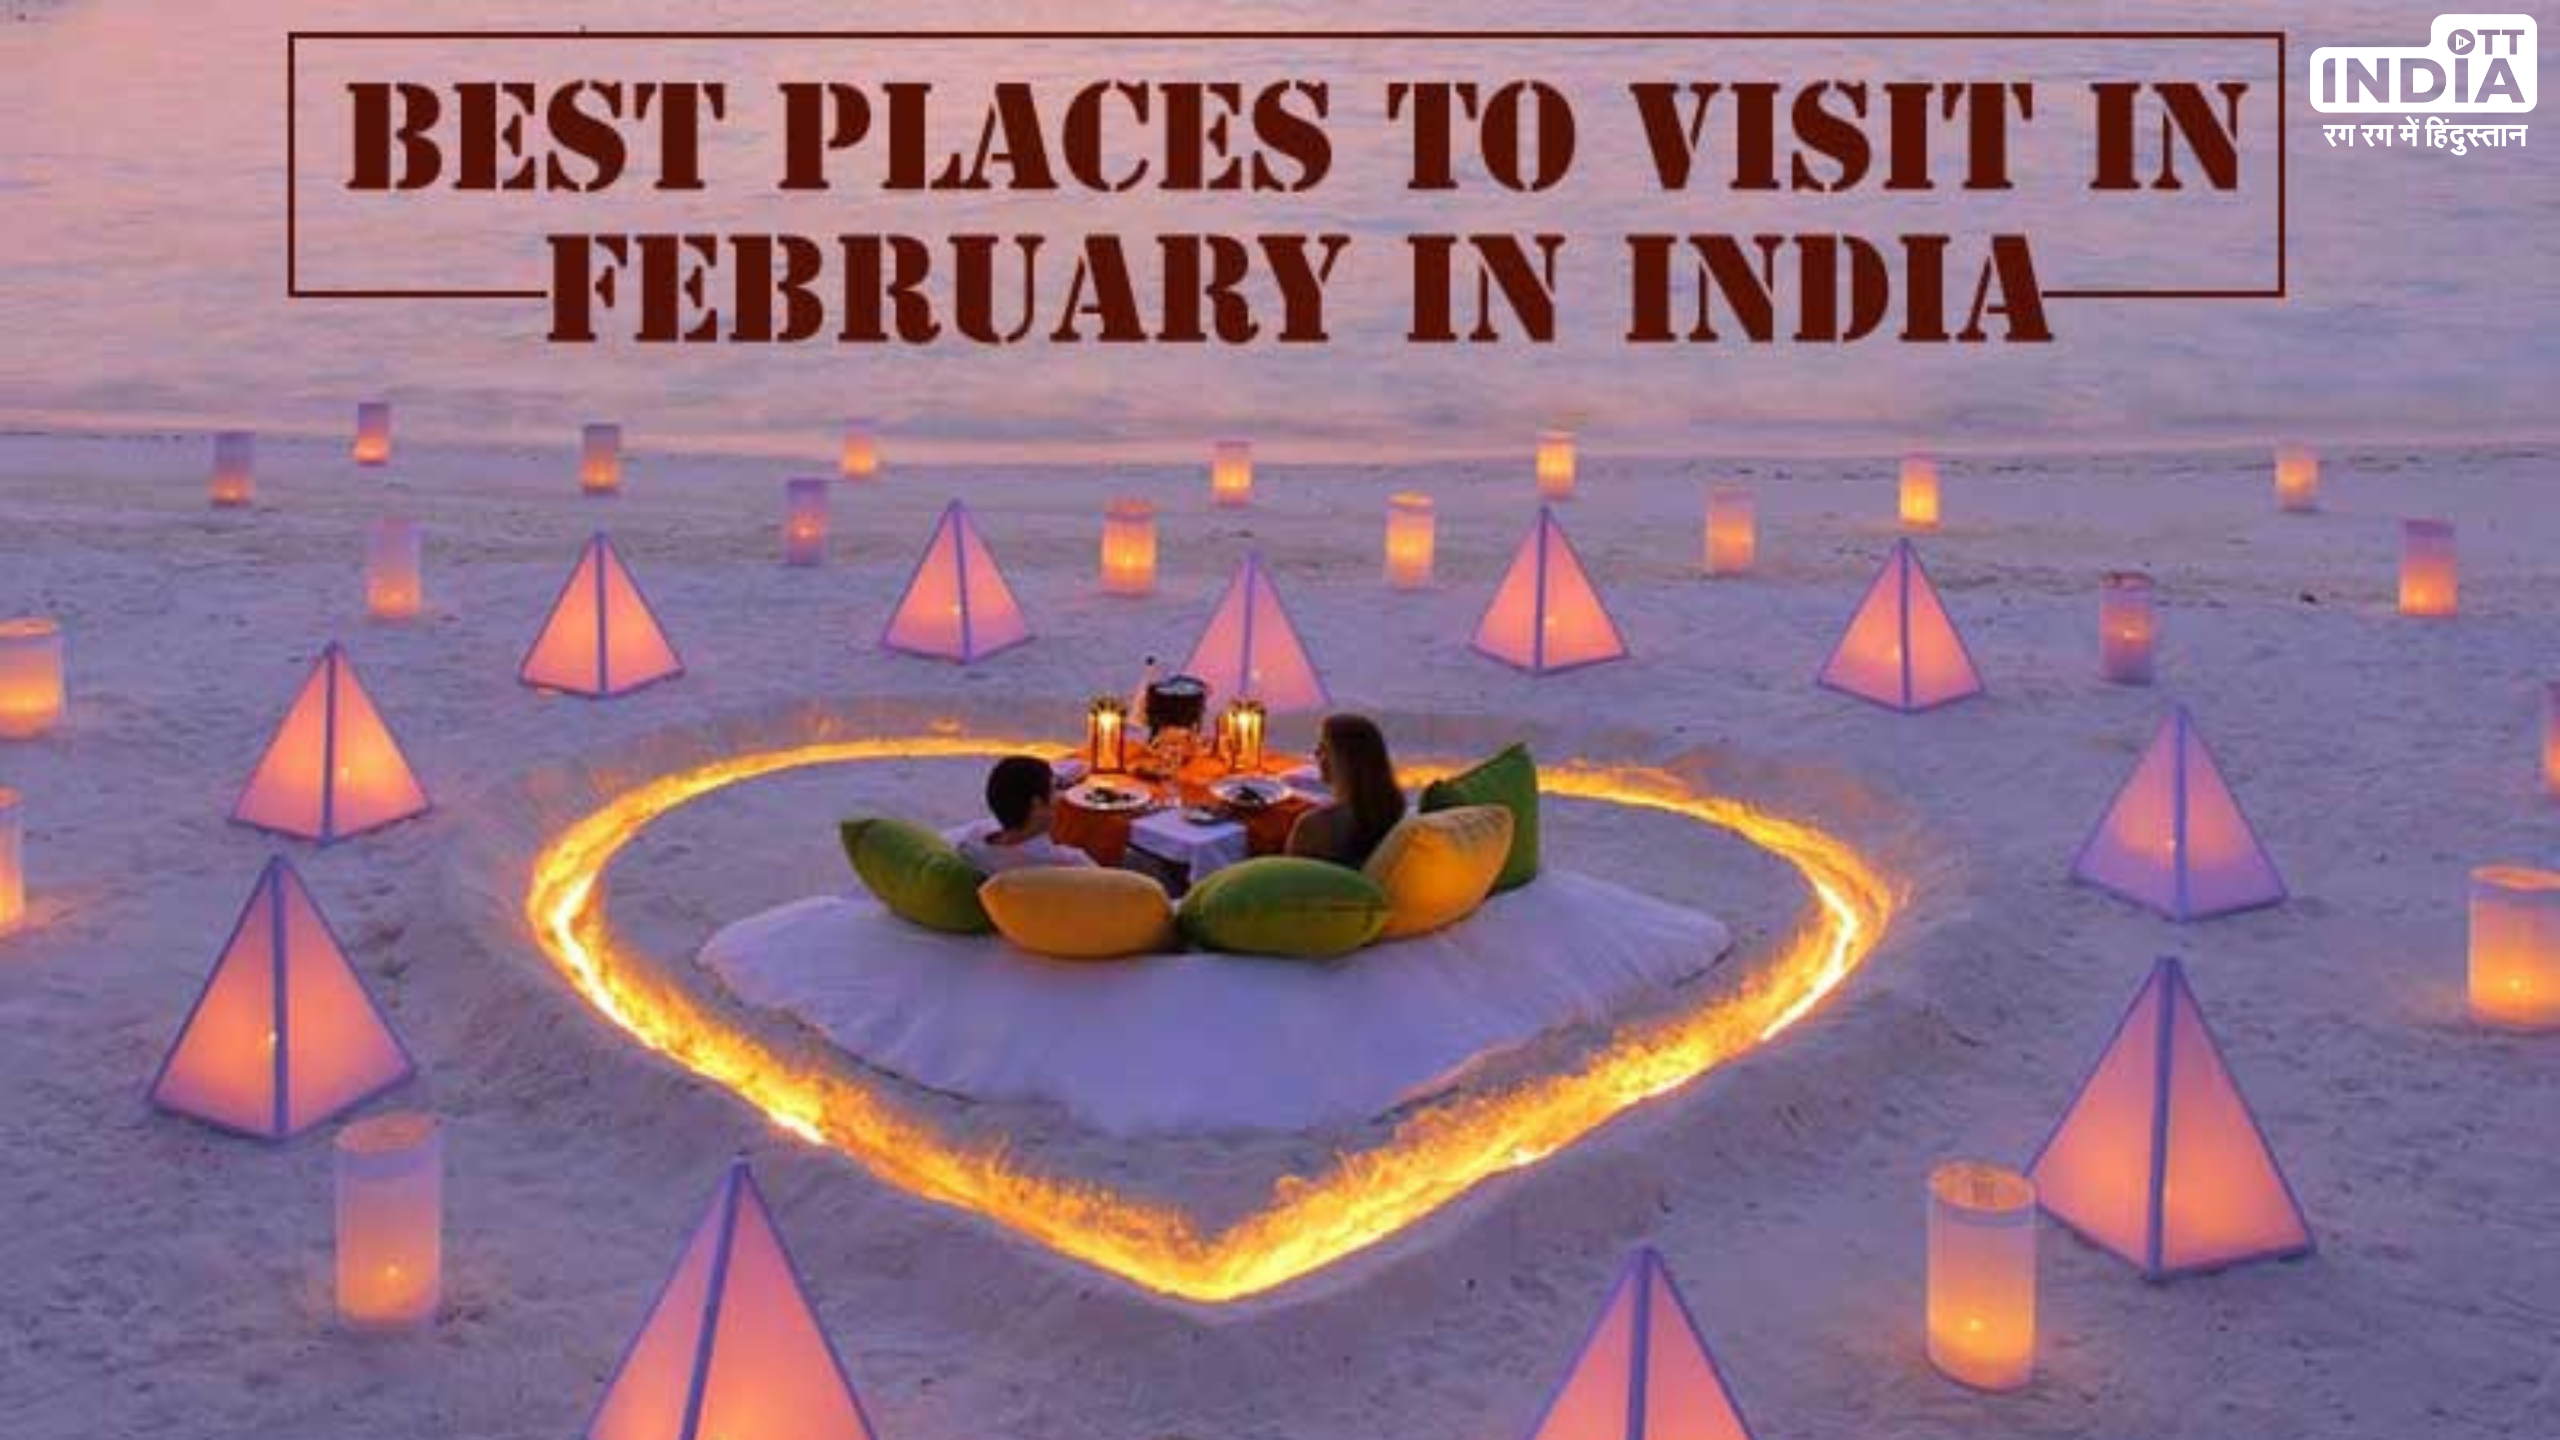 Hill Stations to Visit in February: ये हैं भारत के पांच कम प्रसिद्ध हिल स्टेशंस, फरवरी में घूमने के लिए हैं बेस्ट प्लेस